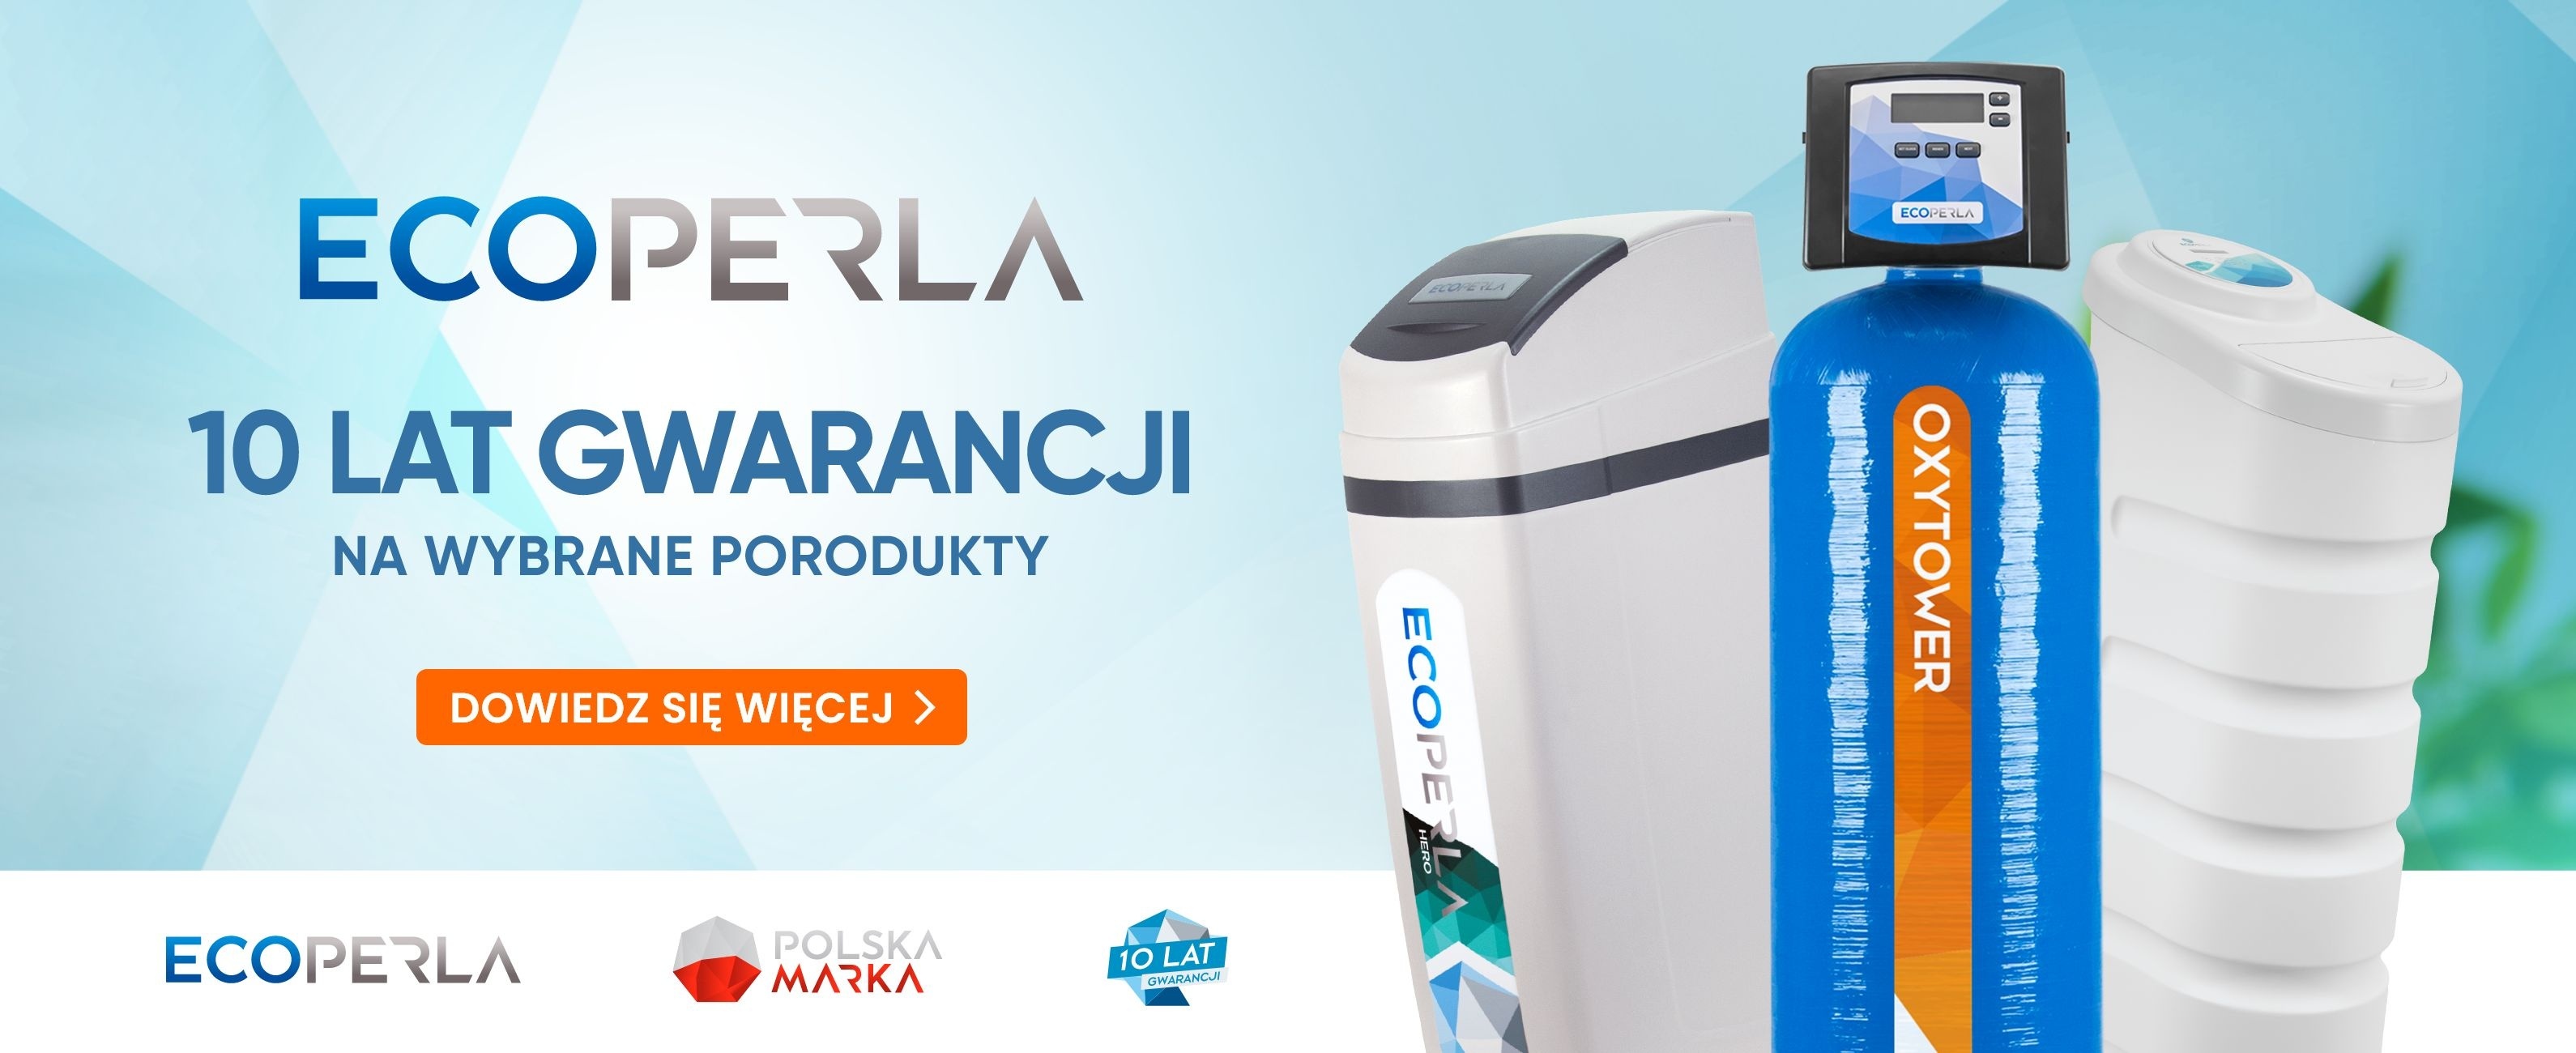 10 lat gwarancji na wybrane produkty marki Ecoperla